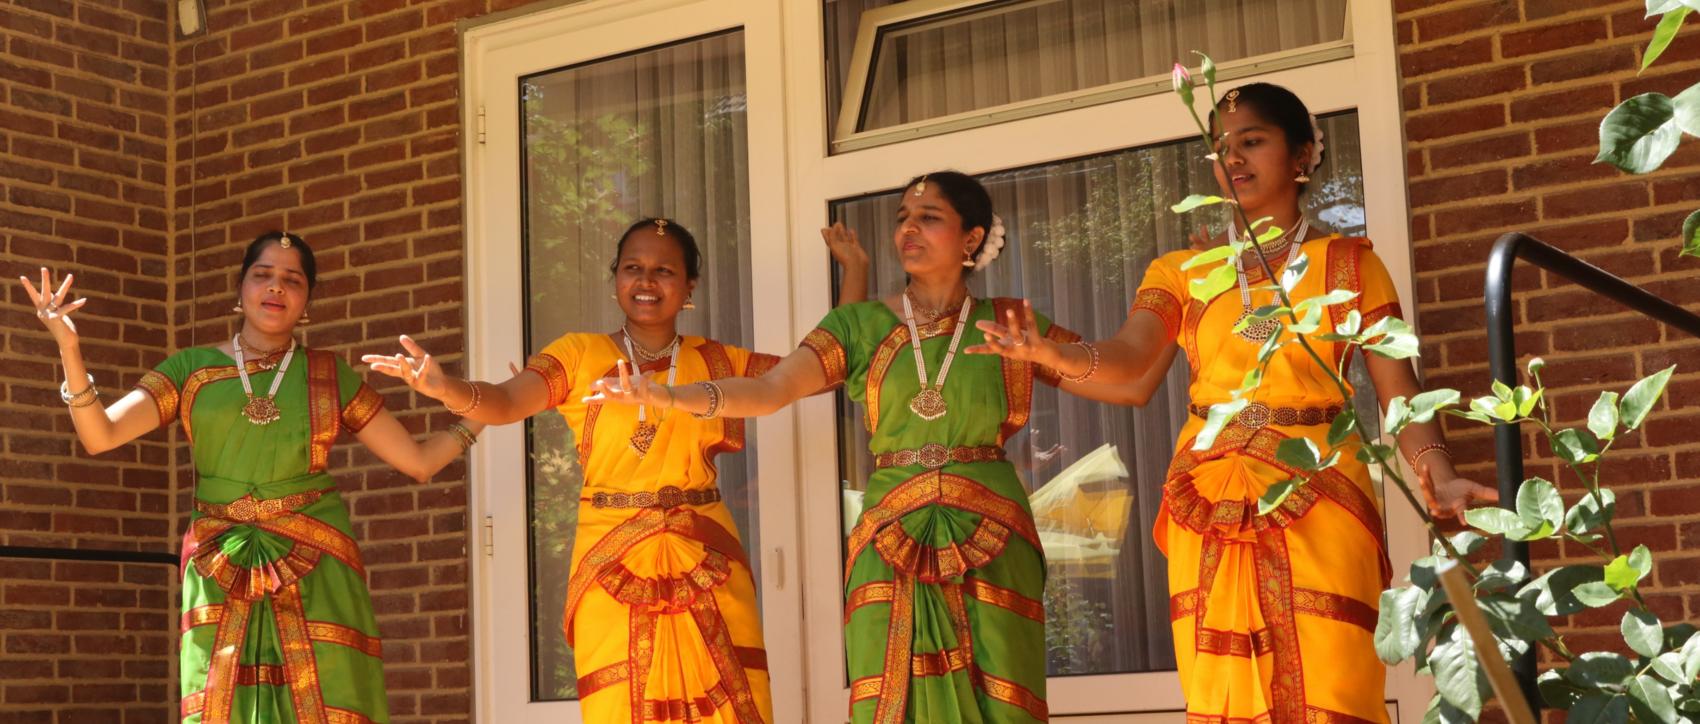 Tanz indische Schwestern